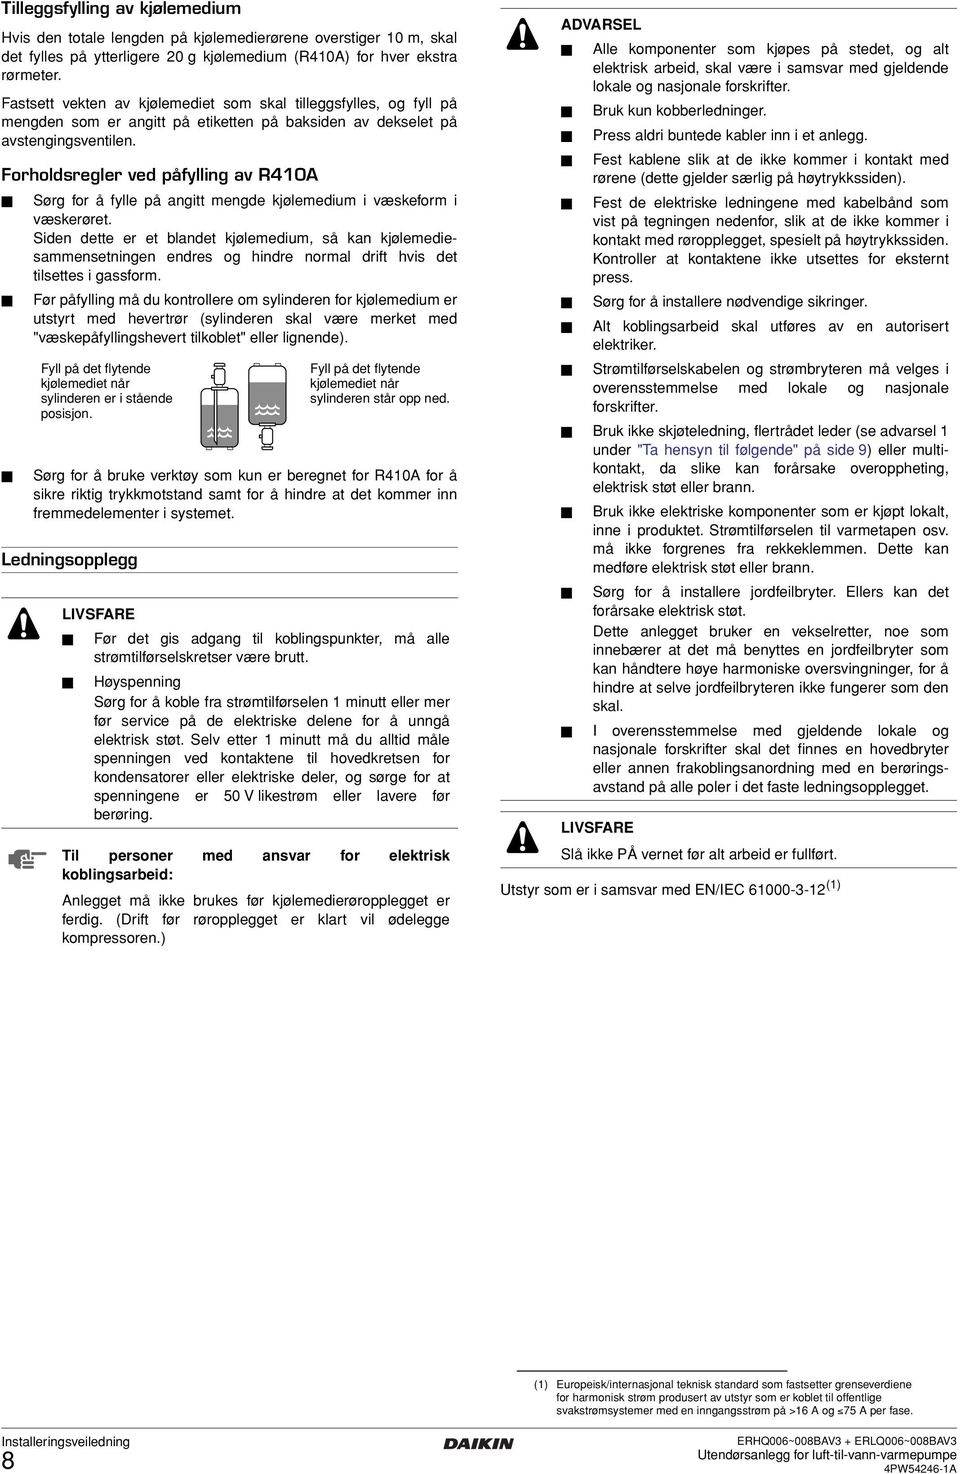 Forholdsregler ved påfylling av R0A Sørg for å fylle på angitt mengde kjølemedium i væskeform i væskerøret.